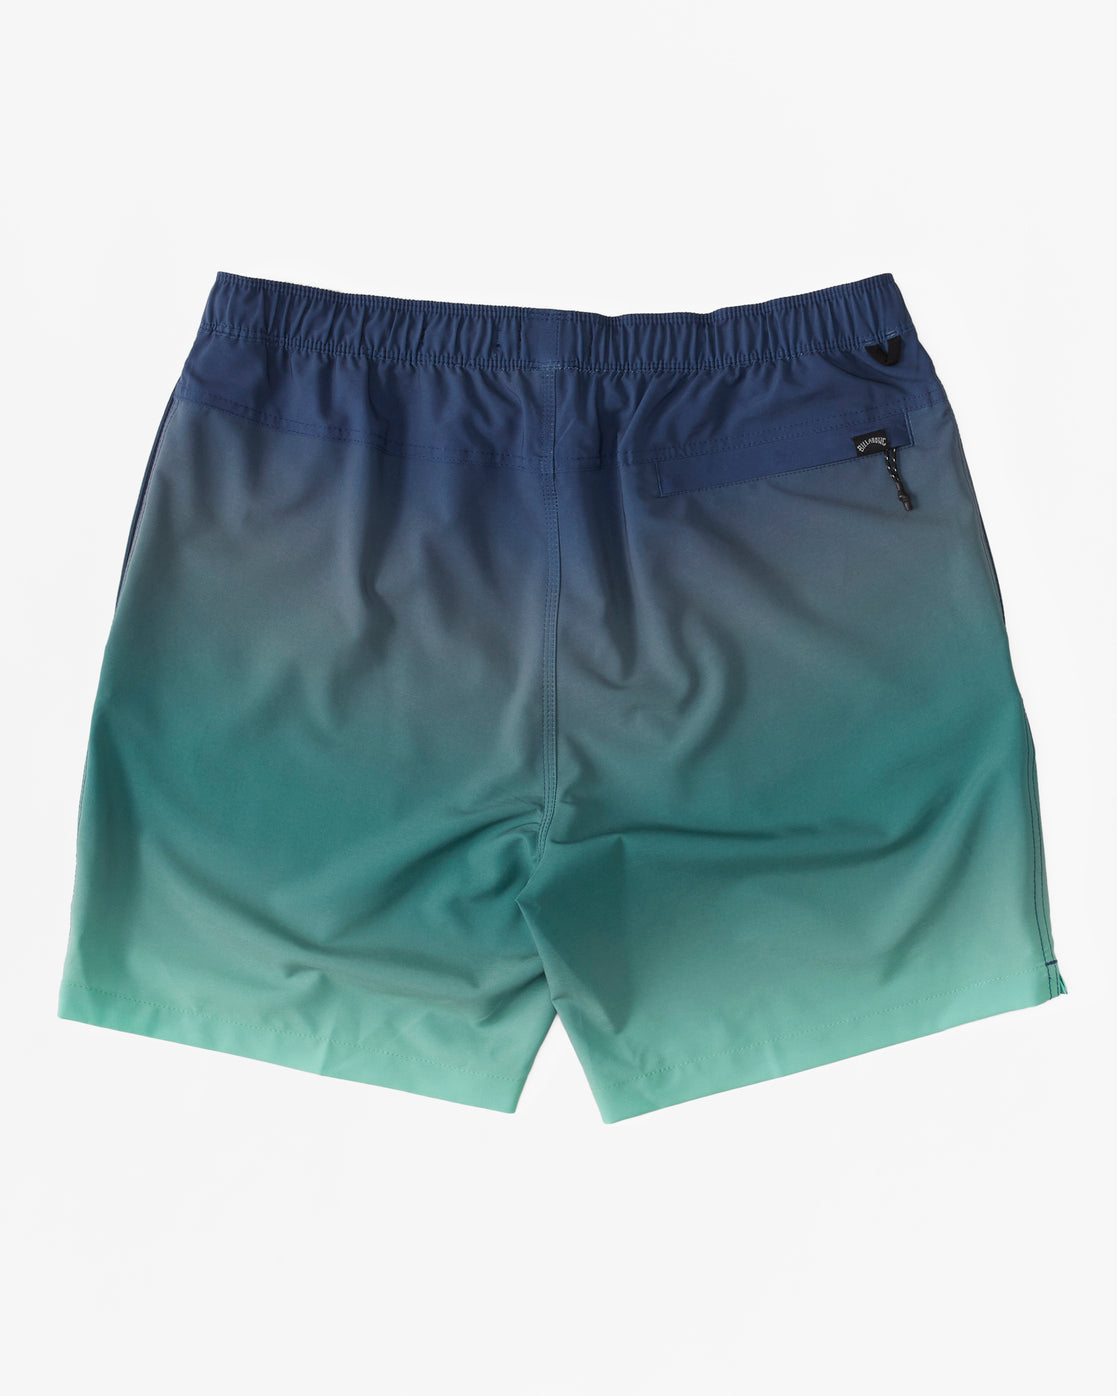 A/Div Surftrek Elastic Shorts 17" - ABYWS00196